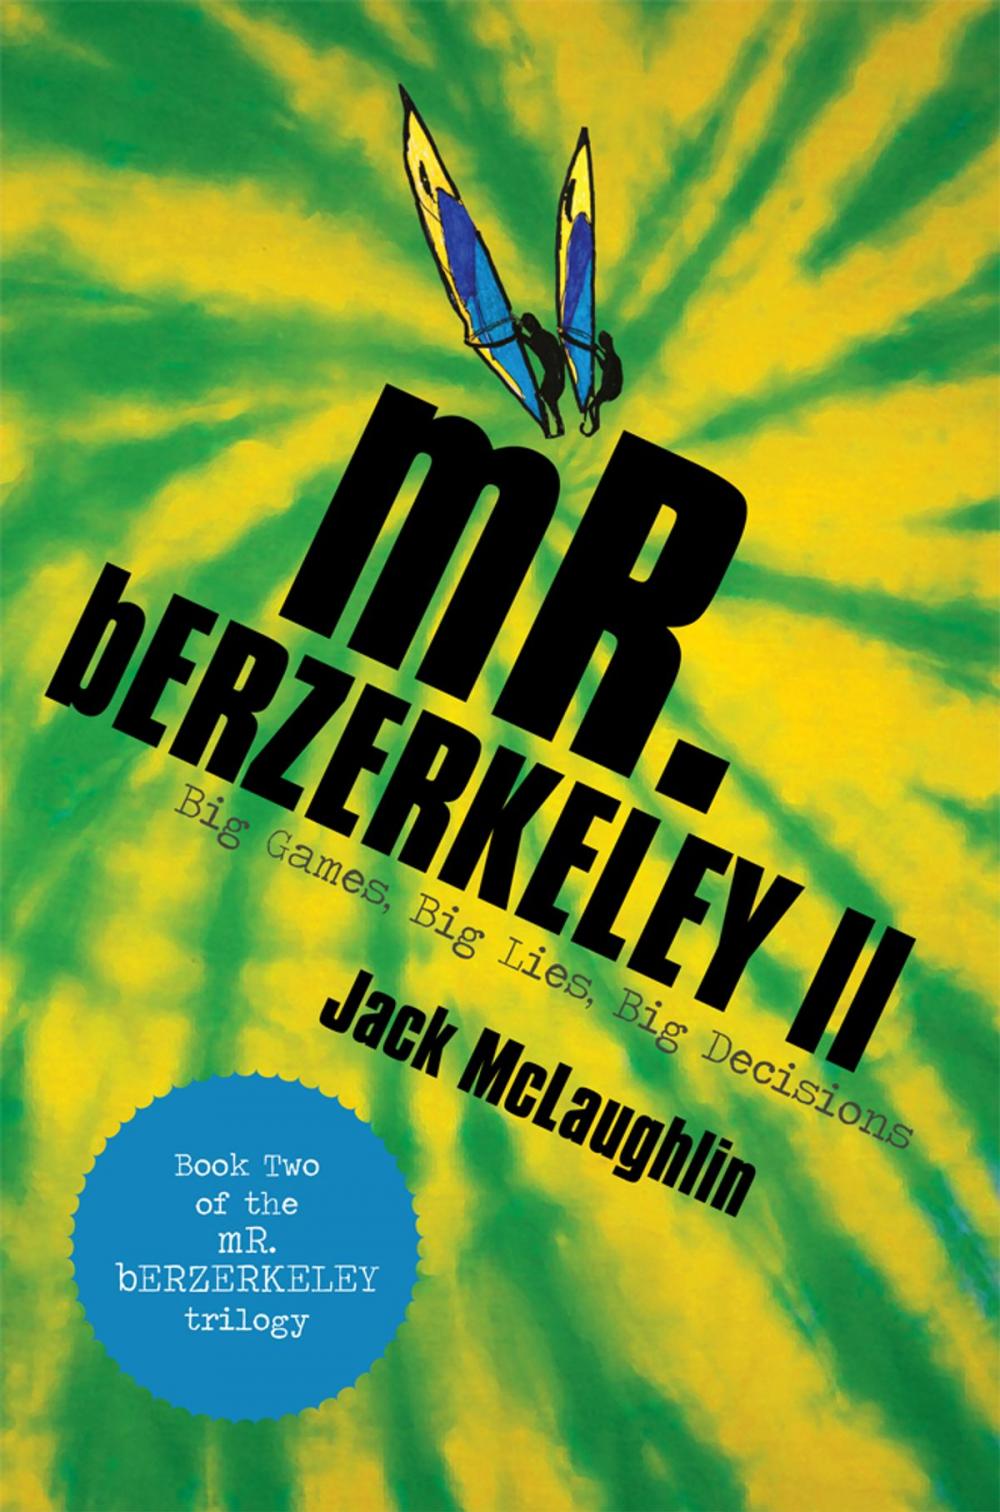 Big bigCover of Mr. Berzerkeley Ii